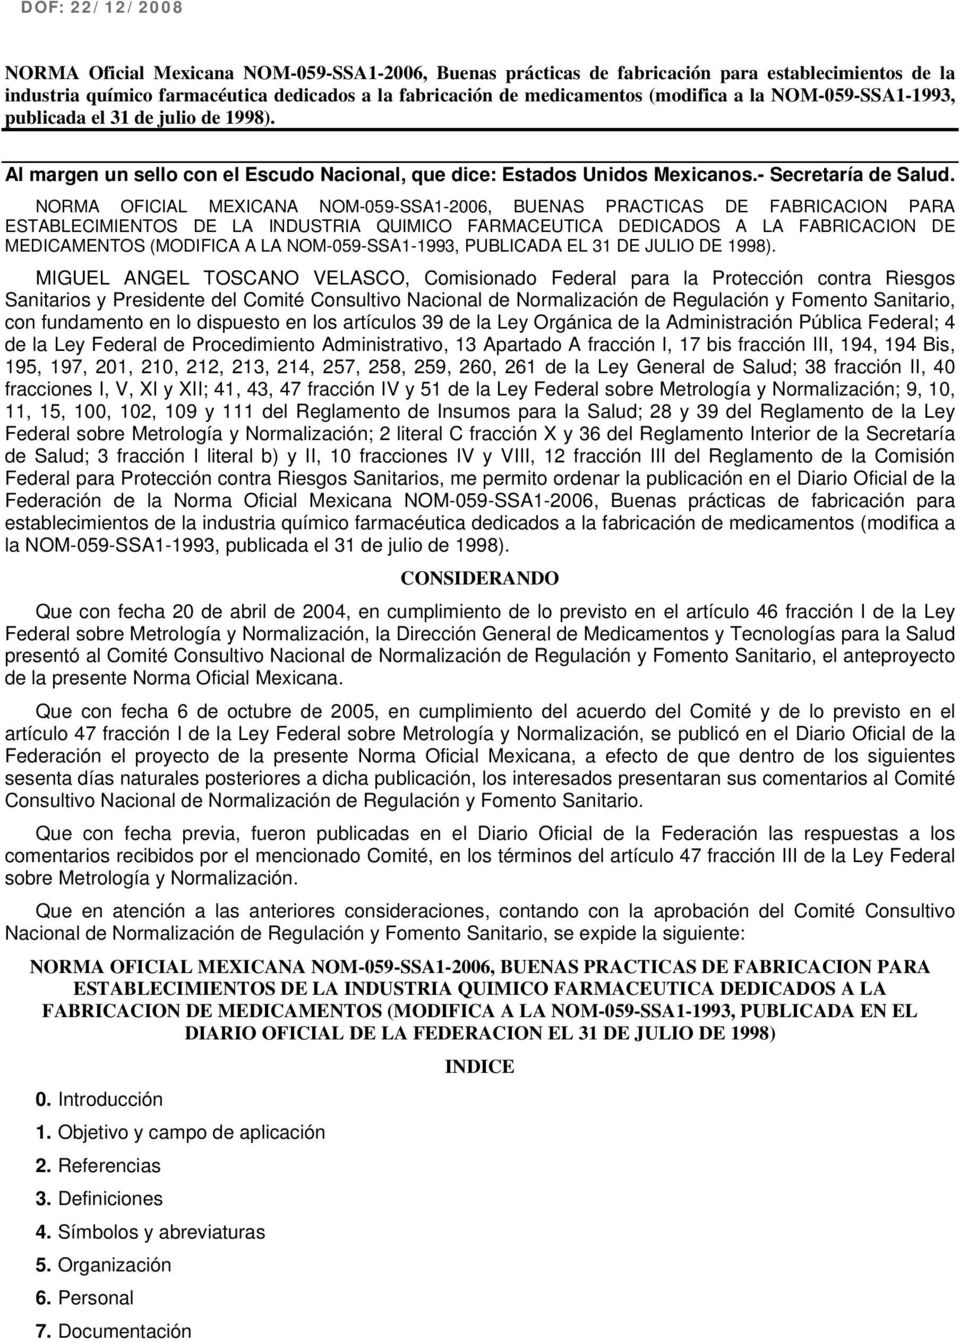 NORMA OFICIAL MEXICANA NOM-059-SSA1-2006, BUENAS PRACTICAS DE FABRICACION PARA ESTABLECIMIENTOS DE LA INDUSTRIA QUIMICO FARMACEUTICA DEDICADOS A LA FABRICACION DE MEDICAMENTOS (MODIFICA A LA